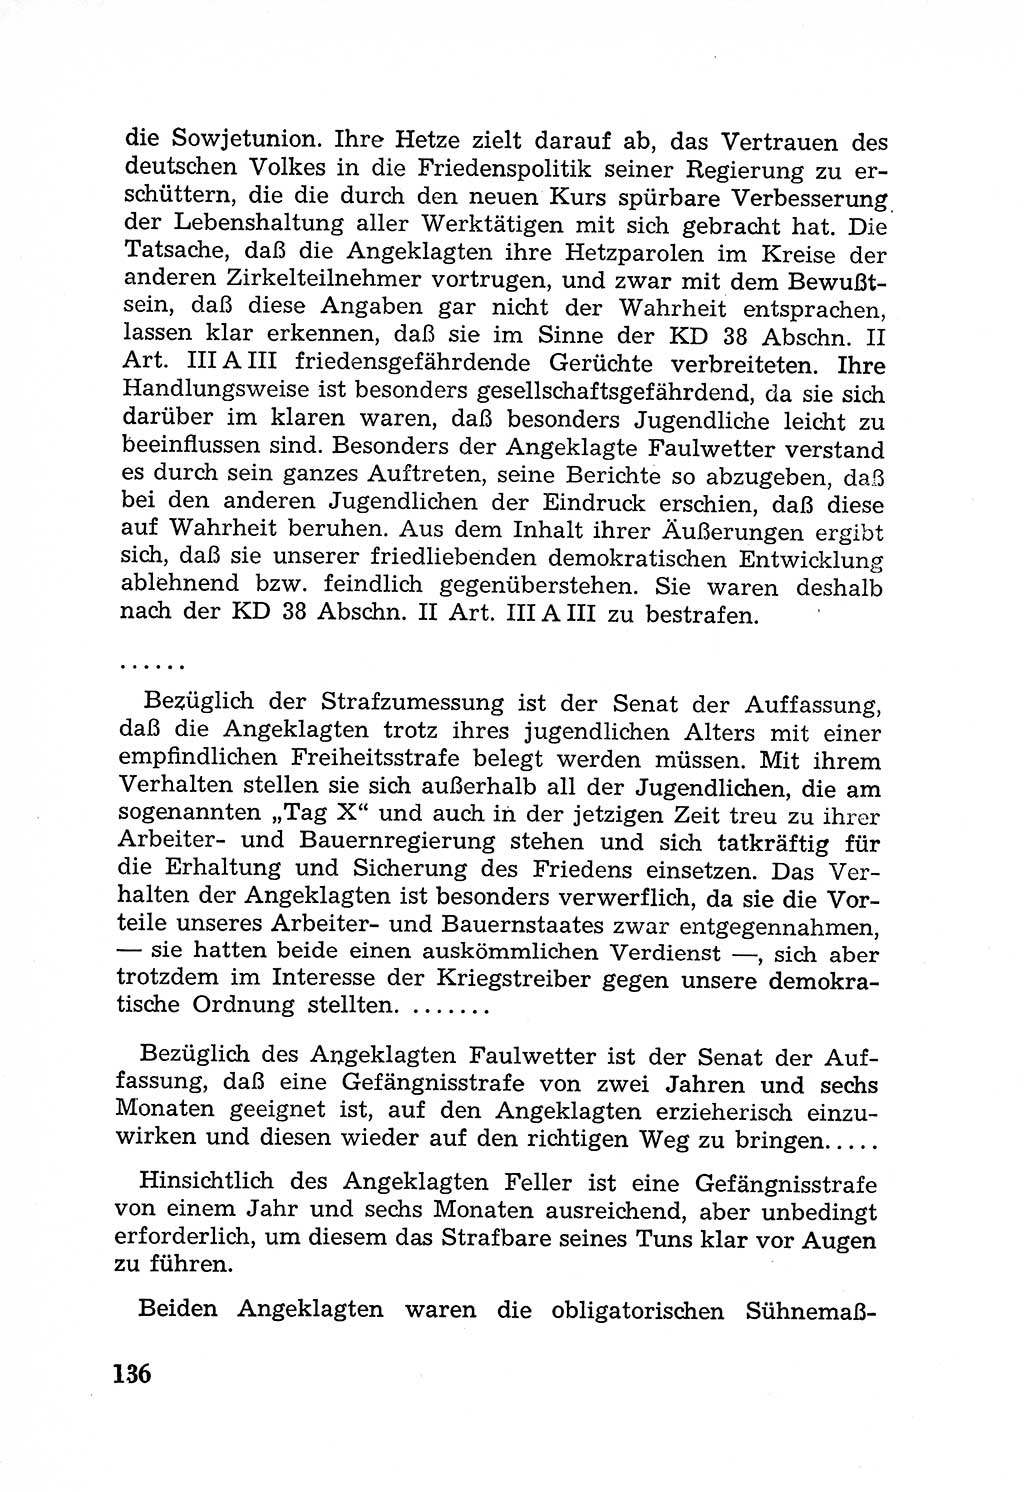 Rechtsstaat in zweierlei Hinsicht, Untersuchungsausschuß freiheitlicher Juristen (UfJ) [Bundesrepublik Deutschland (BRD)] 1956, Seite 136 (R.-St. UfJ BRD 1956, S. 136)